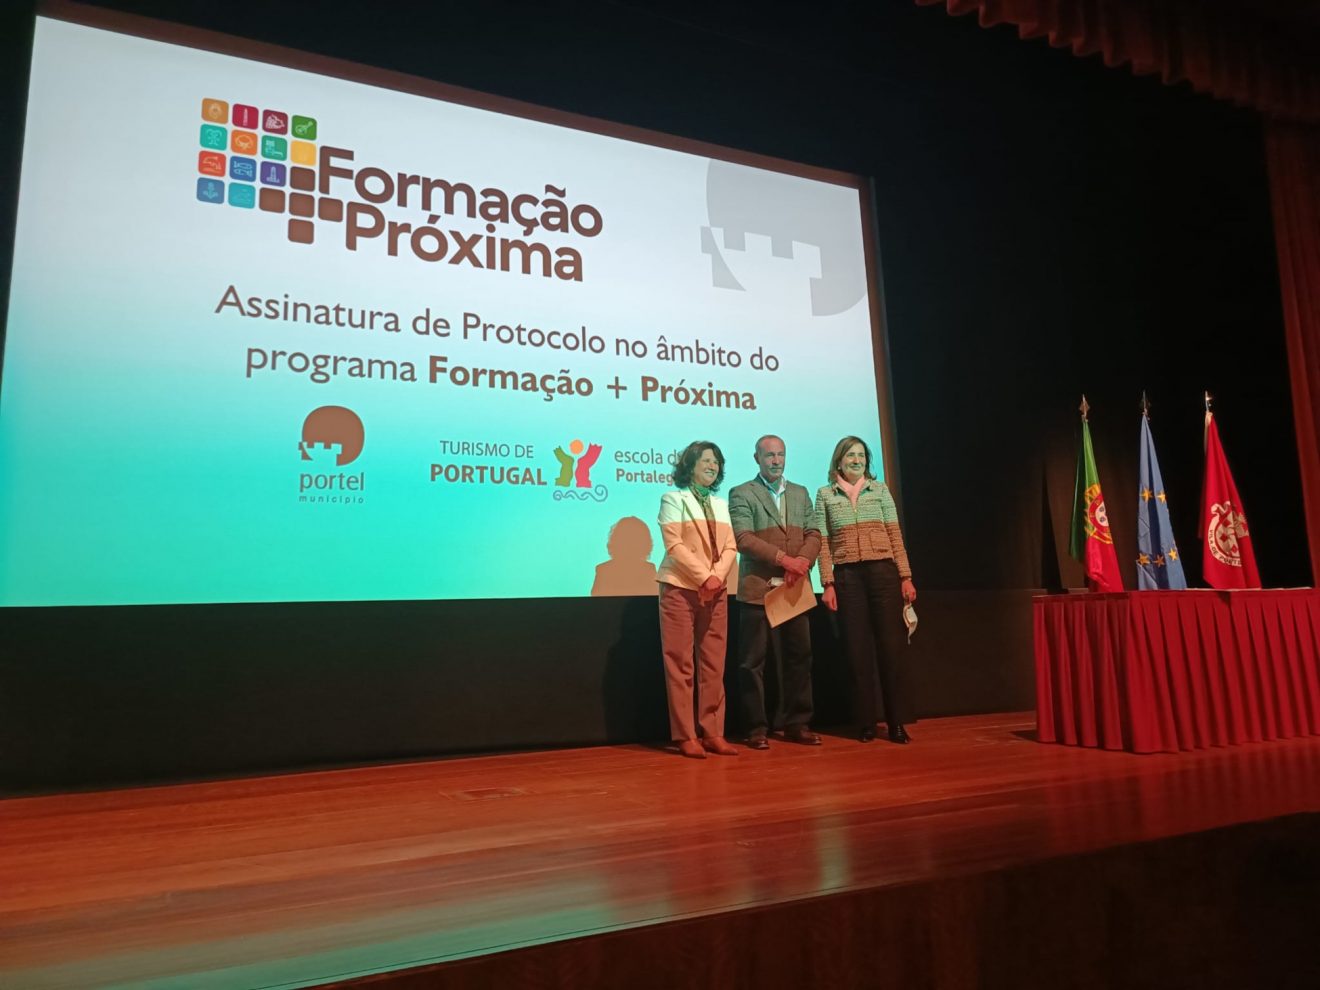 Município assina protocolo com o Turismo de Portugal